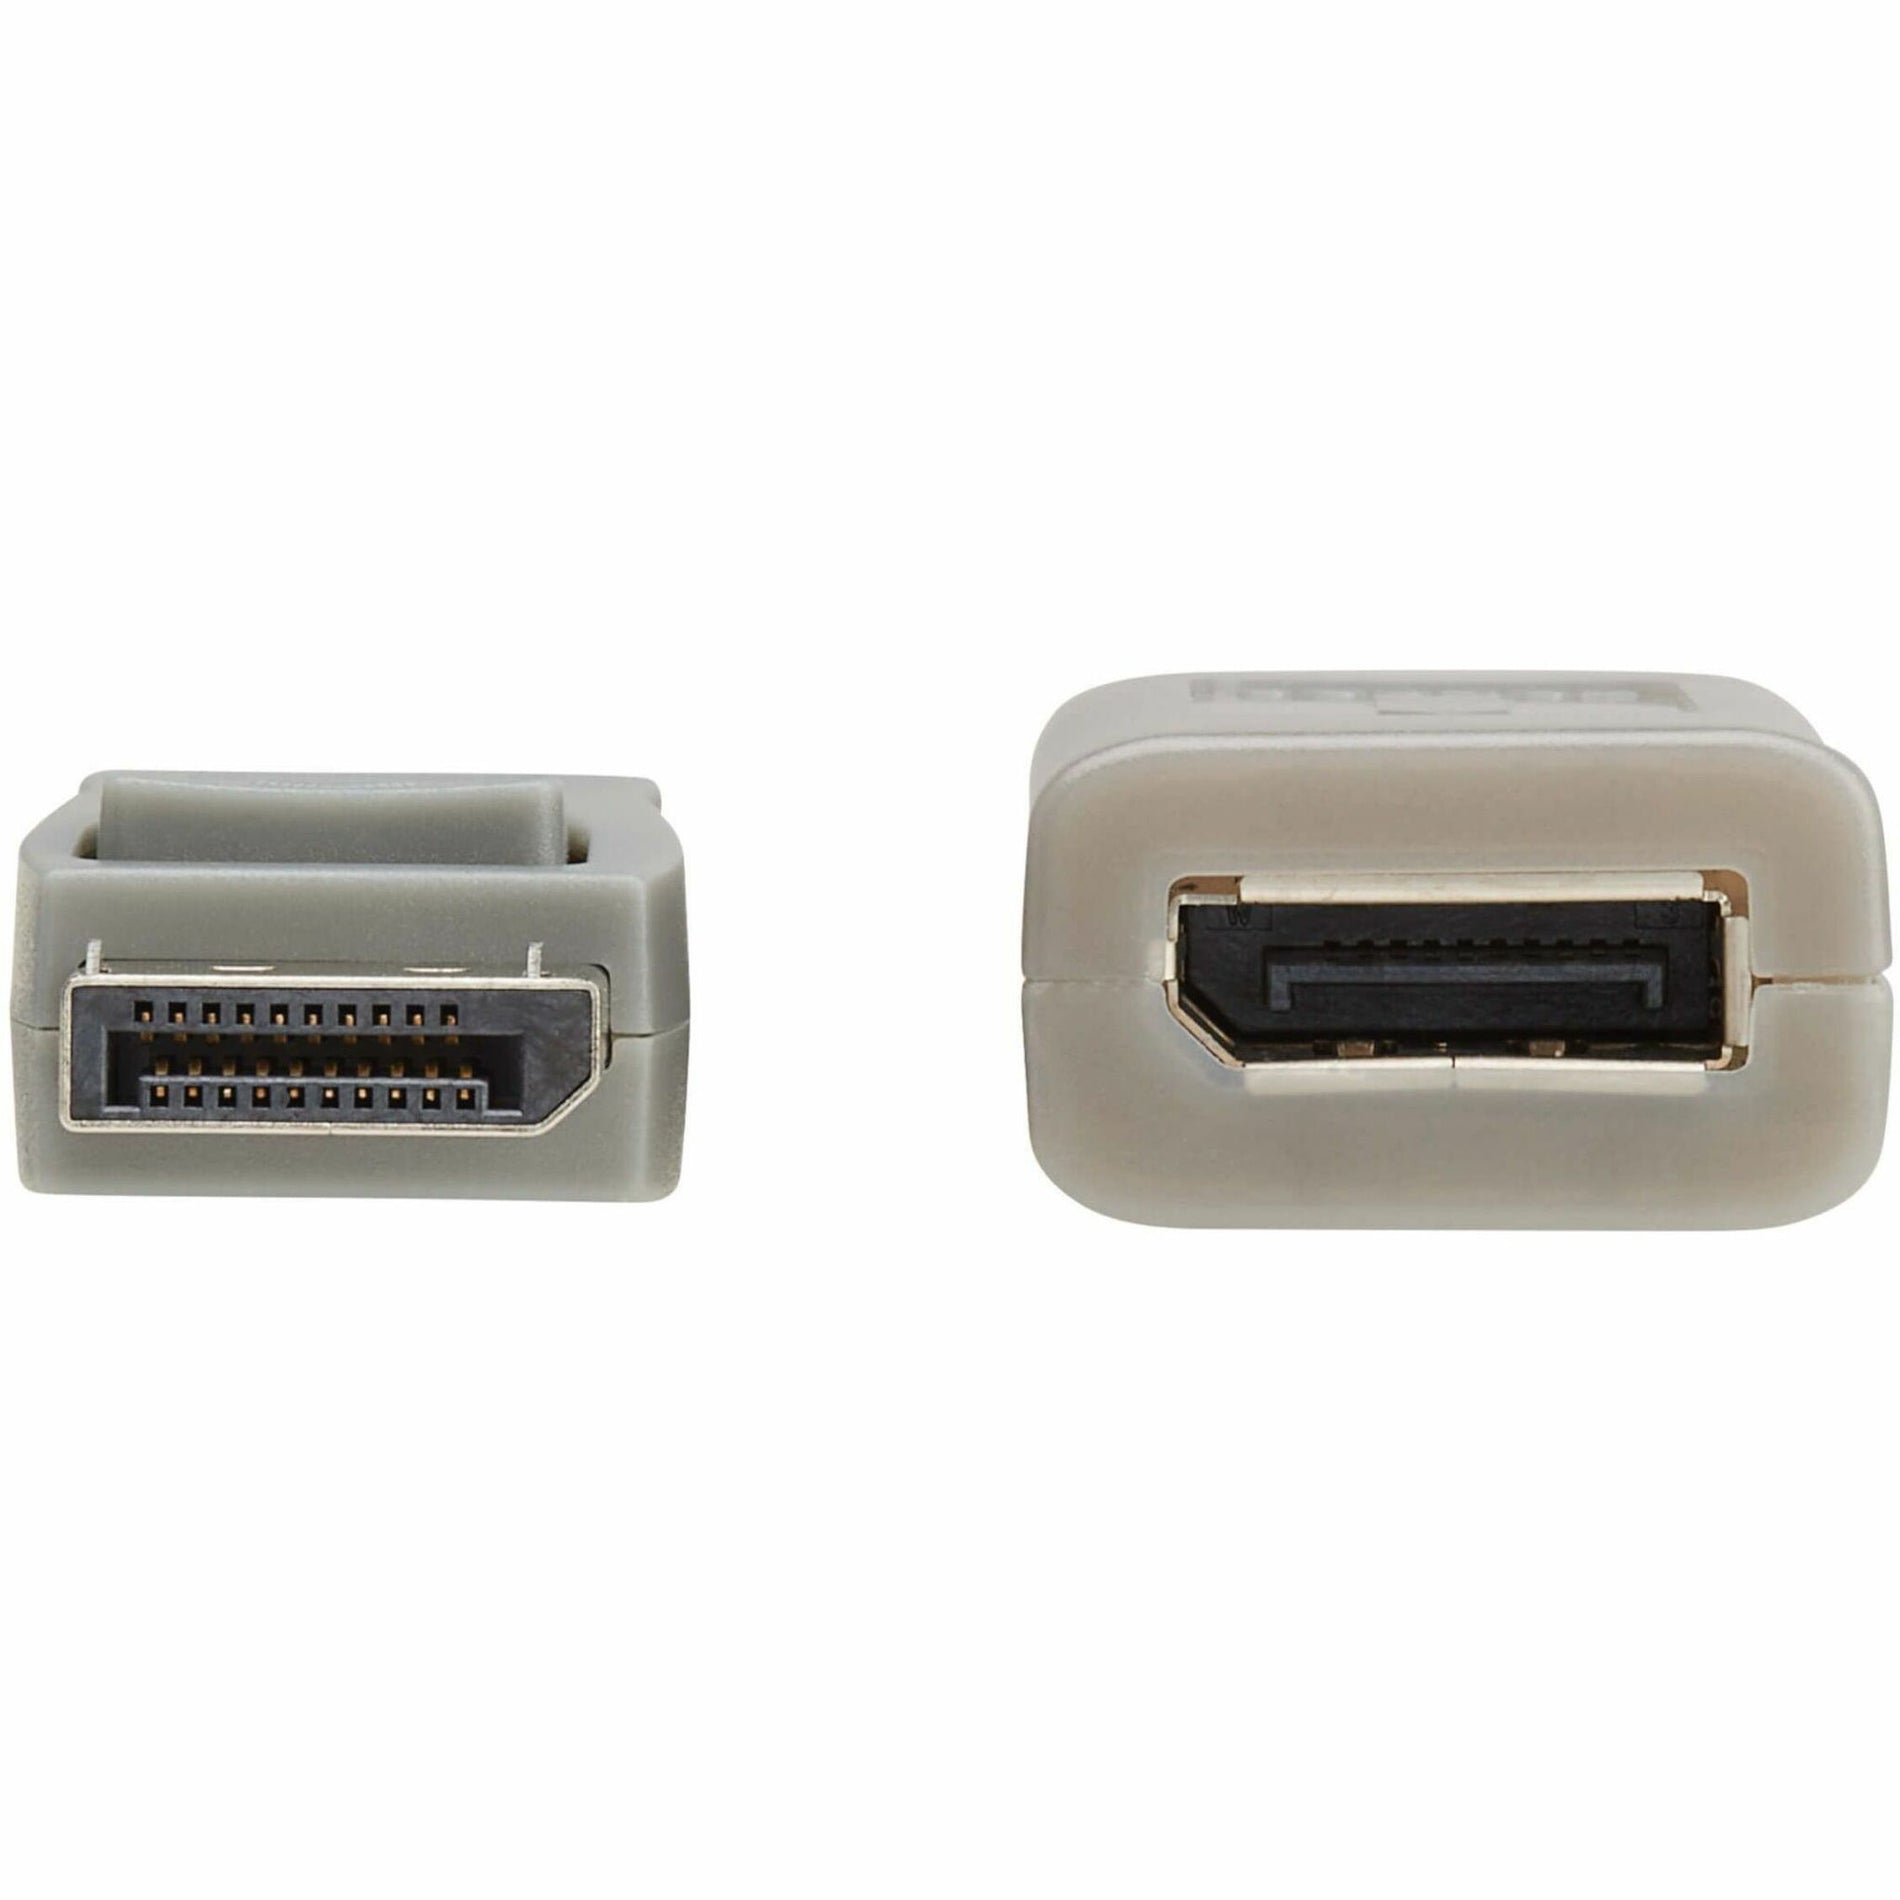 Tripp Lite P579-020-4K6 Display Port Verlängerung Audio/Video Kabel 20 ft HDR Unterstützung Passiv Greifender Stecker Rastender Stecker HDCP 2.2 Flexibel